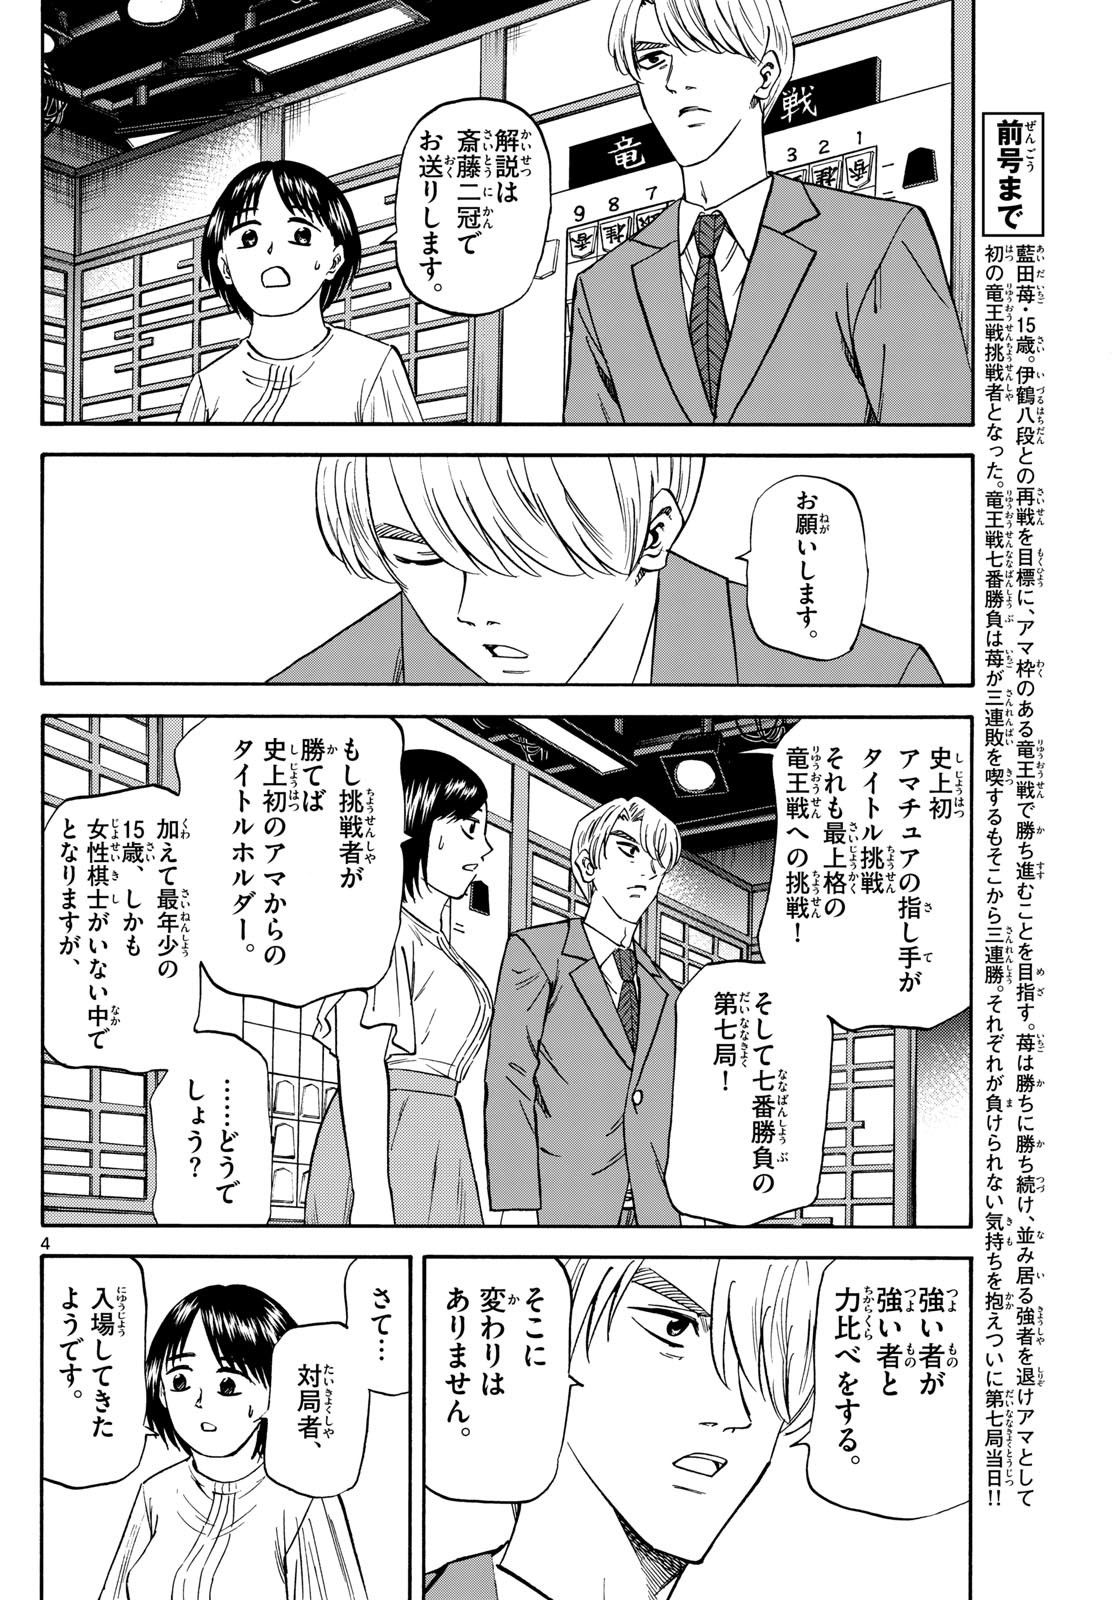 Ryu-to-Ichigo - Chapter 175 - Page 4